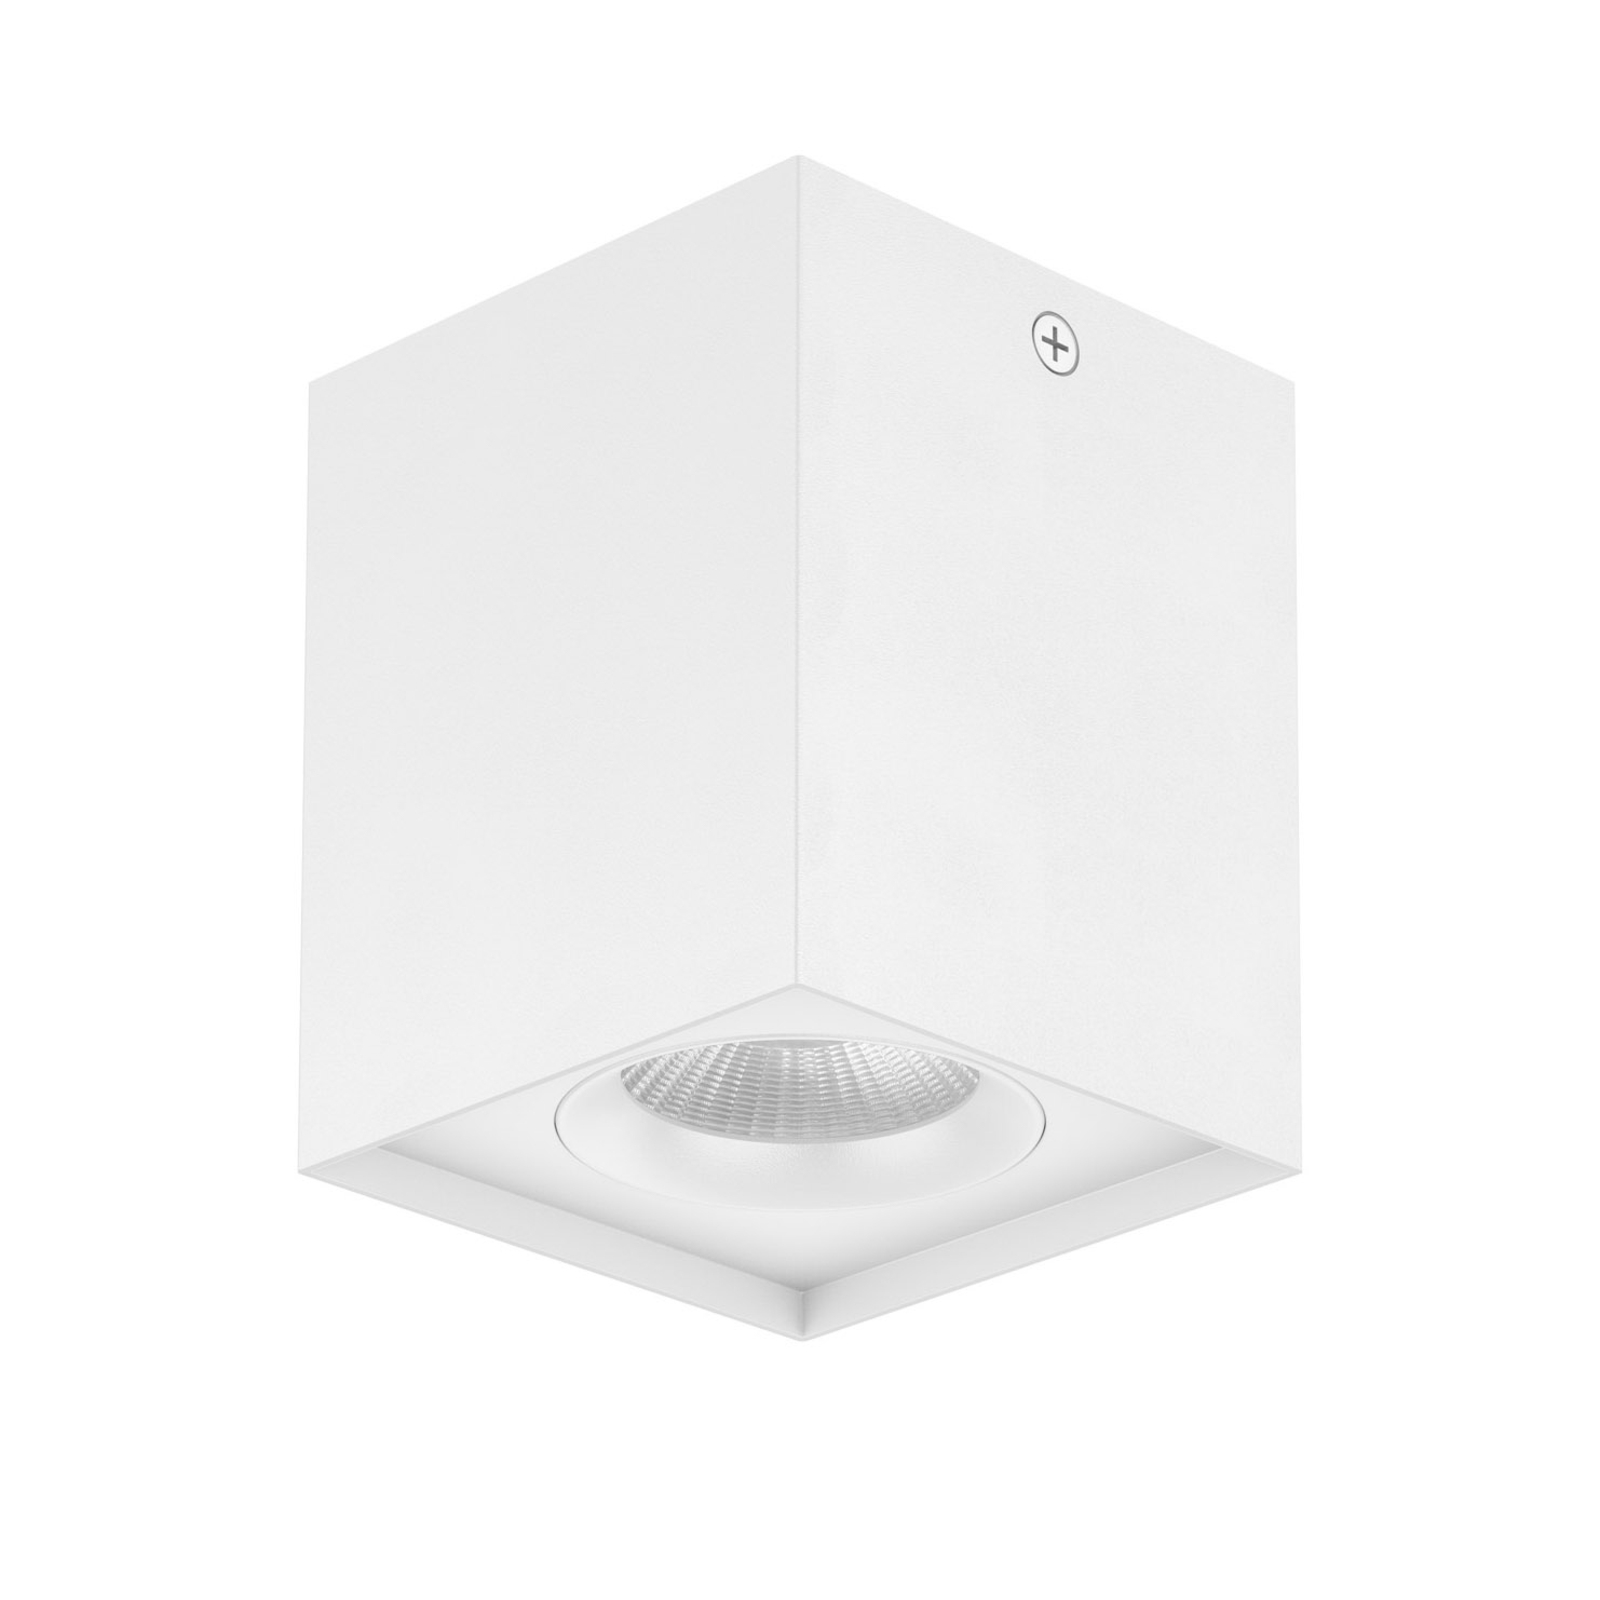 EVN Kardanus stropné LED svetlo, 9x9 cm, biela